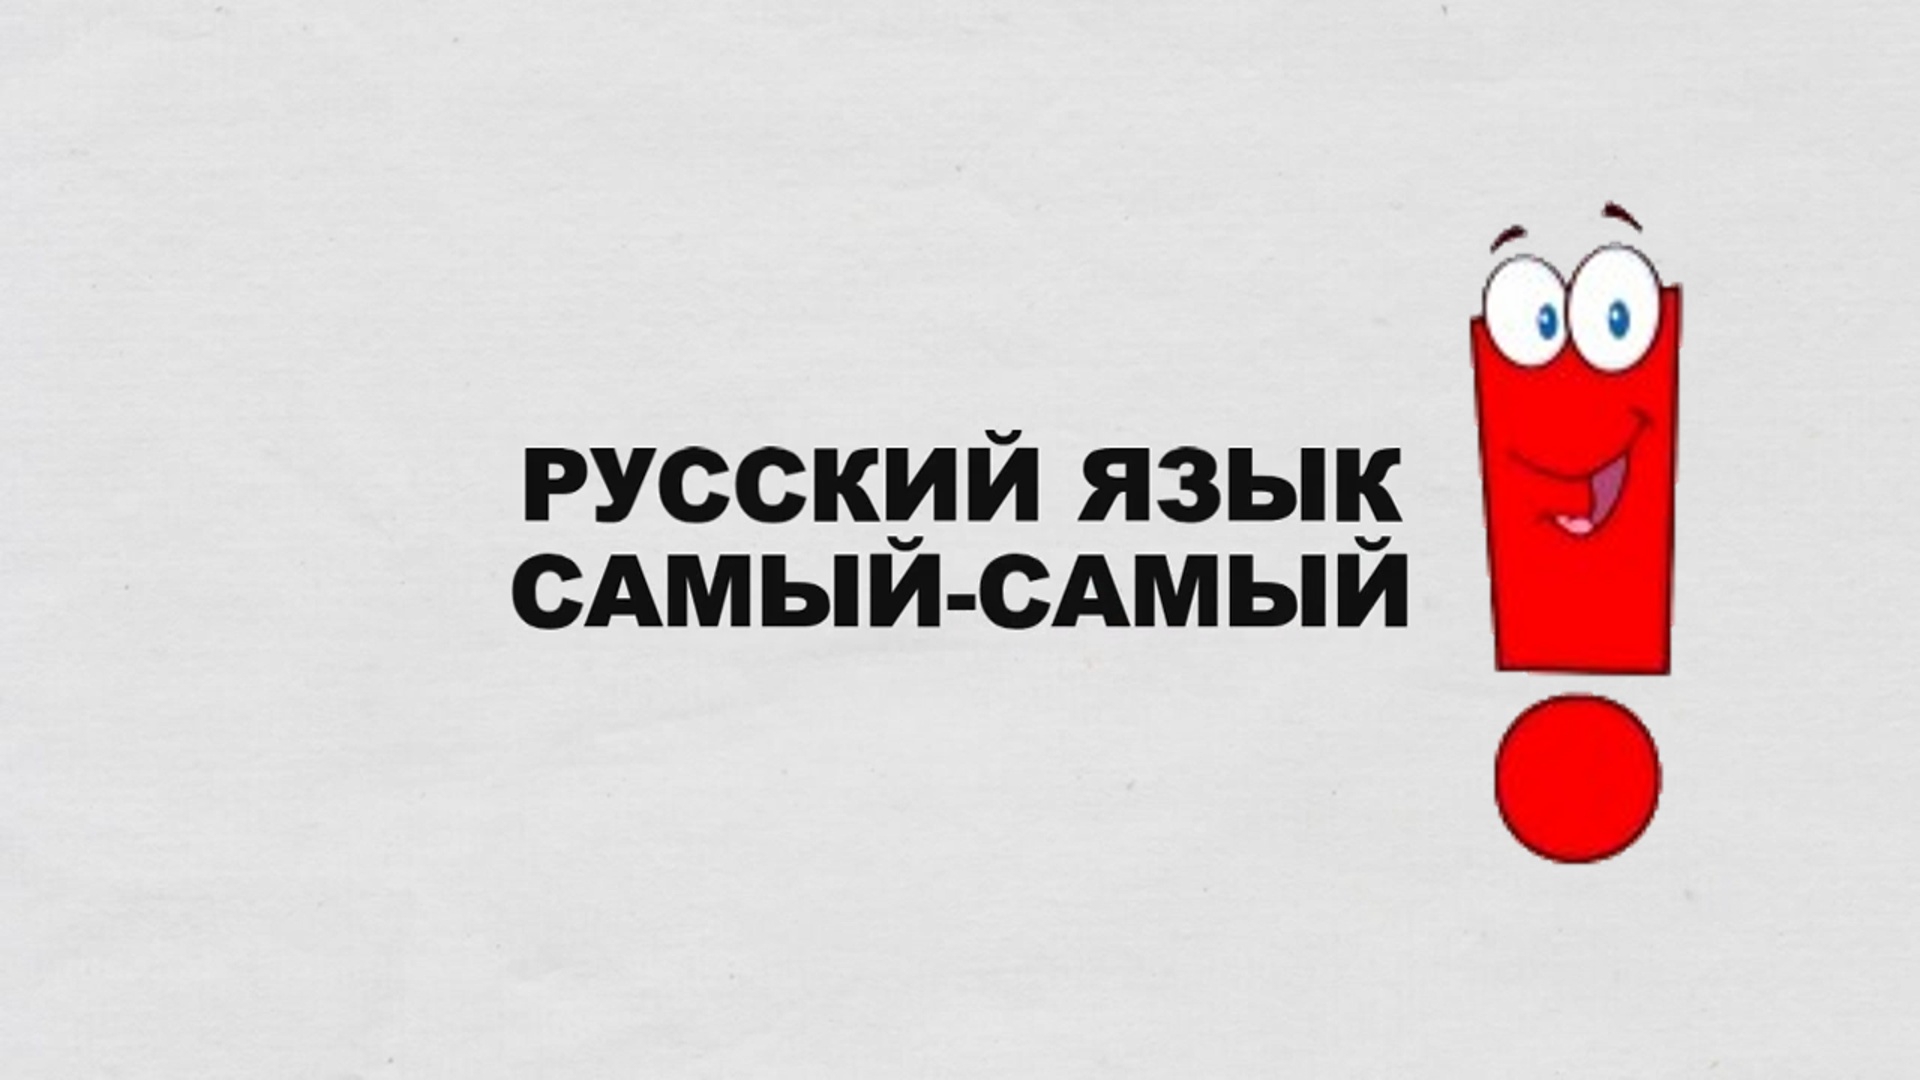 Включи с русским разговором. Русский язык. Социальная реклама русского языка. Русский язык лучший. Я русский.